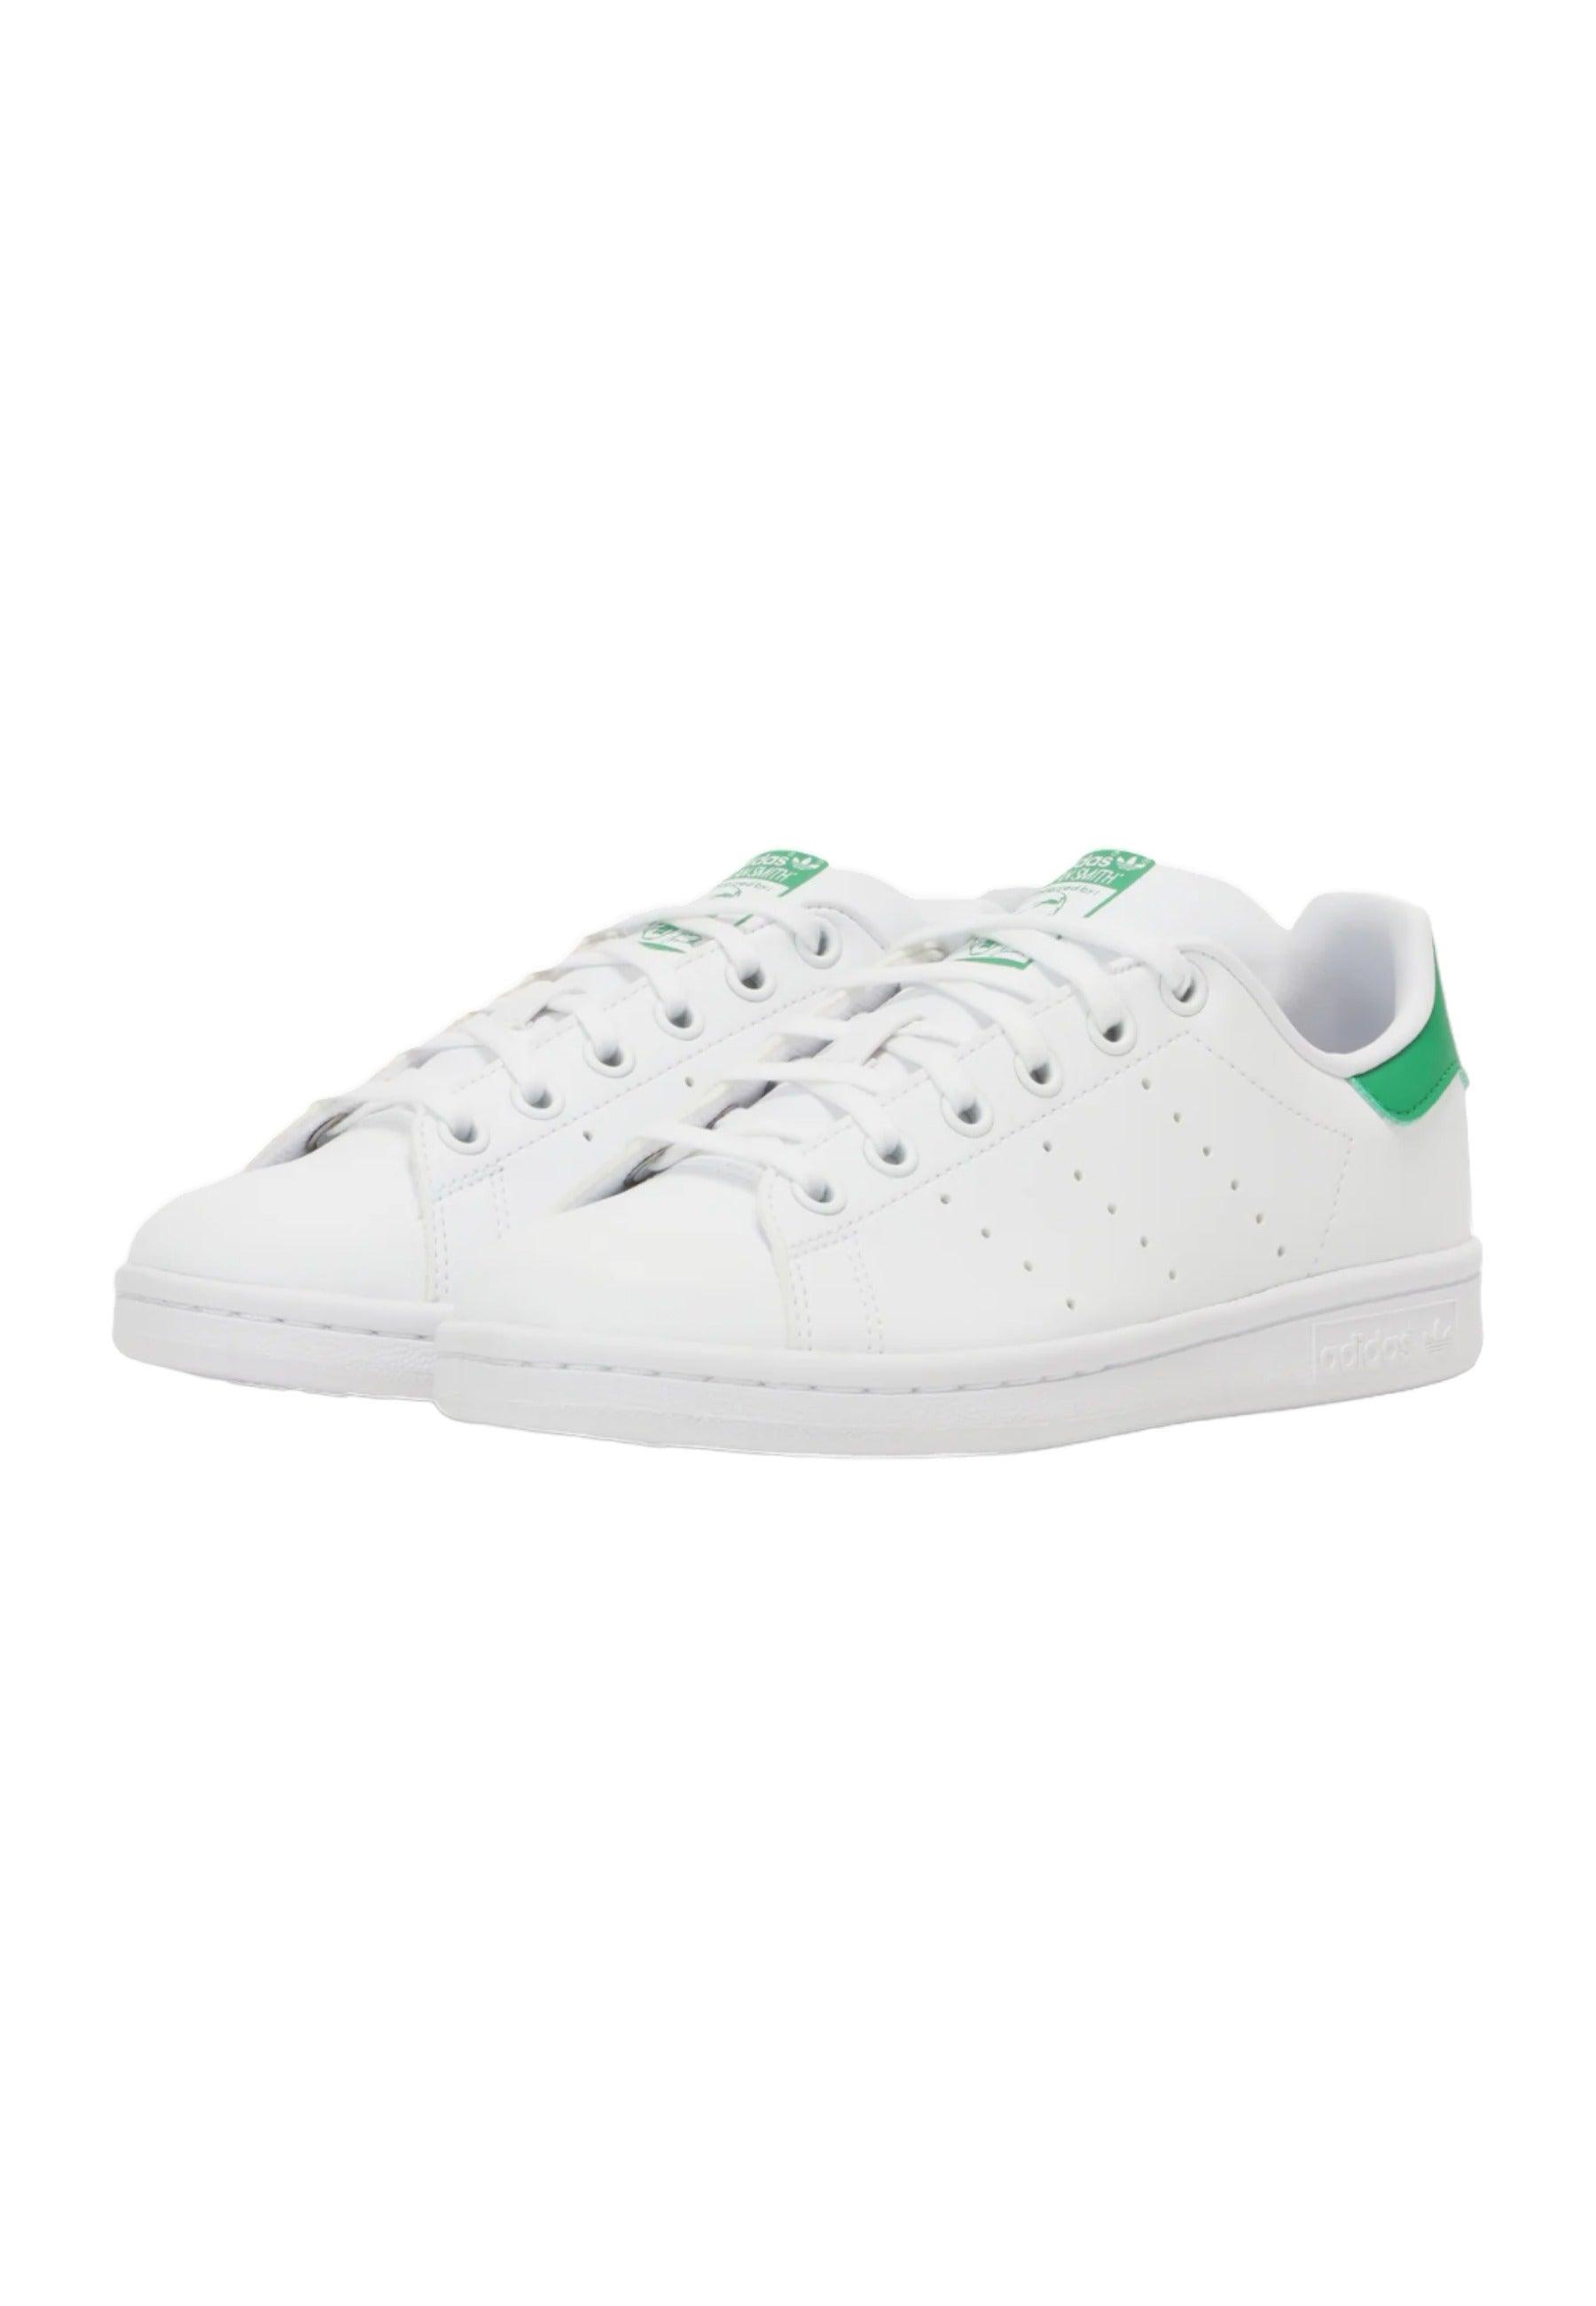 ADIDAS Stan Smith Sneaker Uomo White Green FX5502 - Sandrini Calzature e Abbigliamento